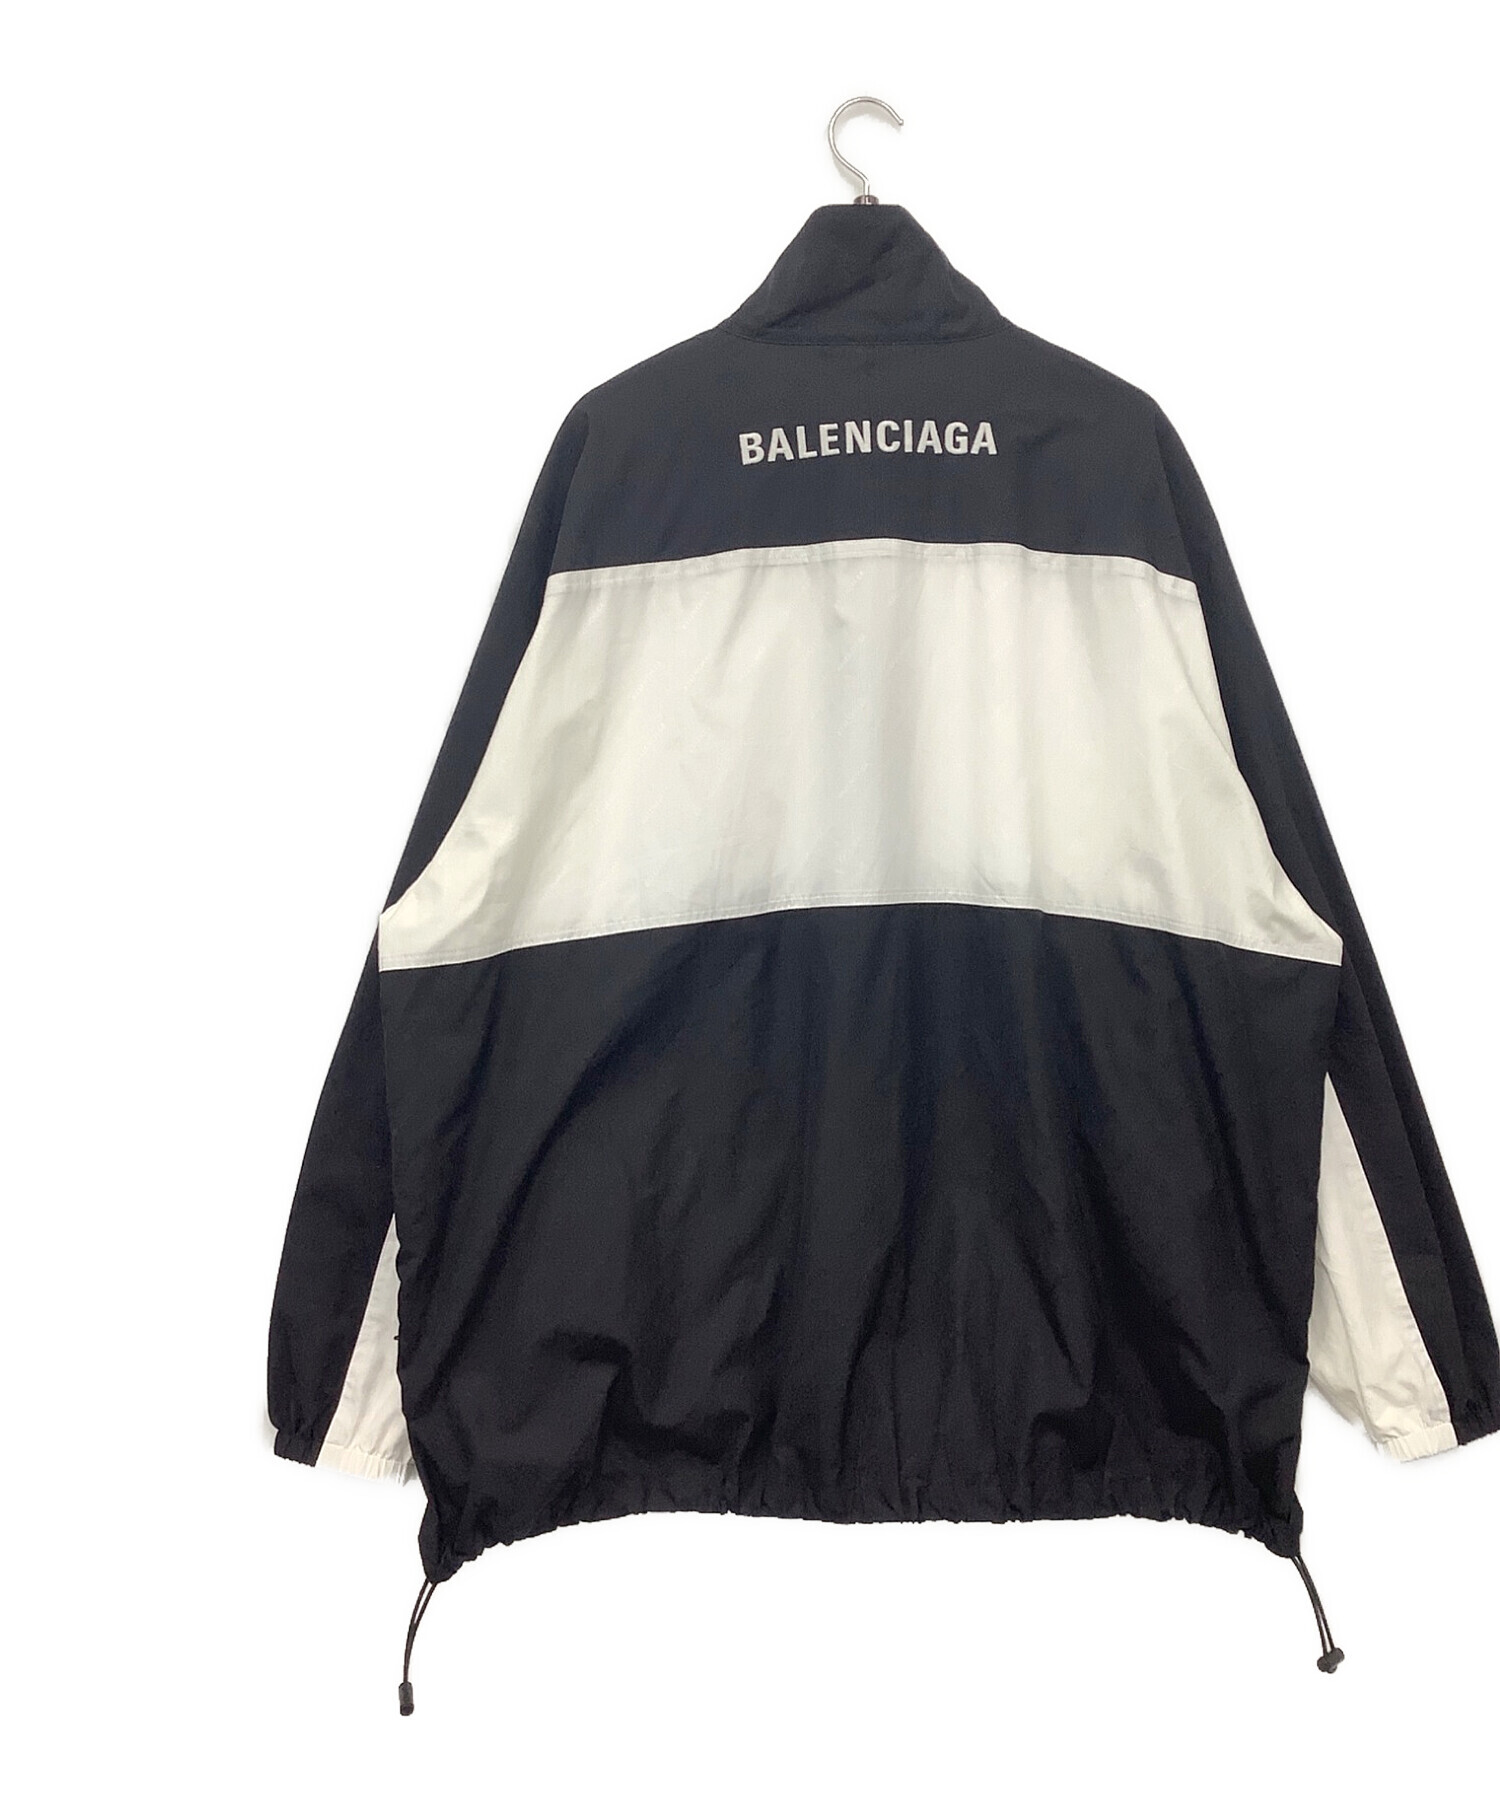 BALENCIAGA (バレンシアガ) ロゴナイロンジップアップトラックジャケットブルゾン ブラック×ホワイト サイズ:44